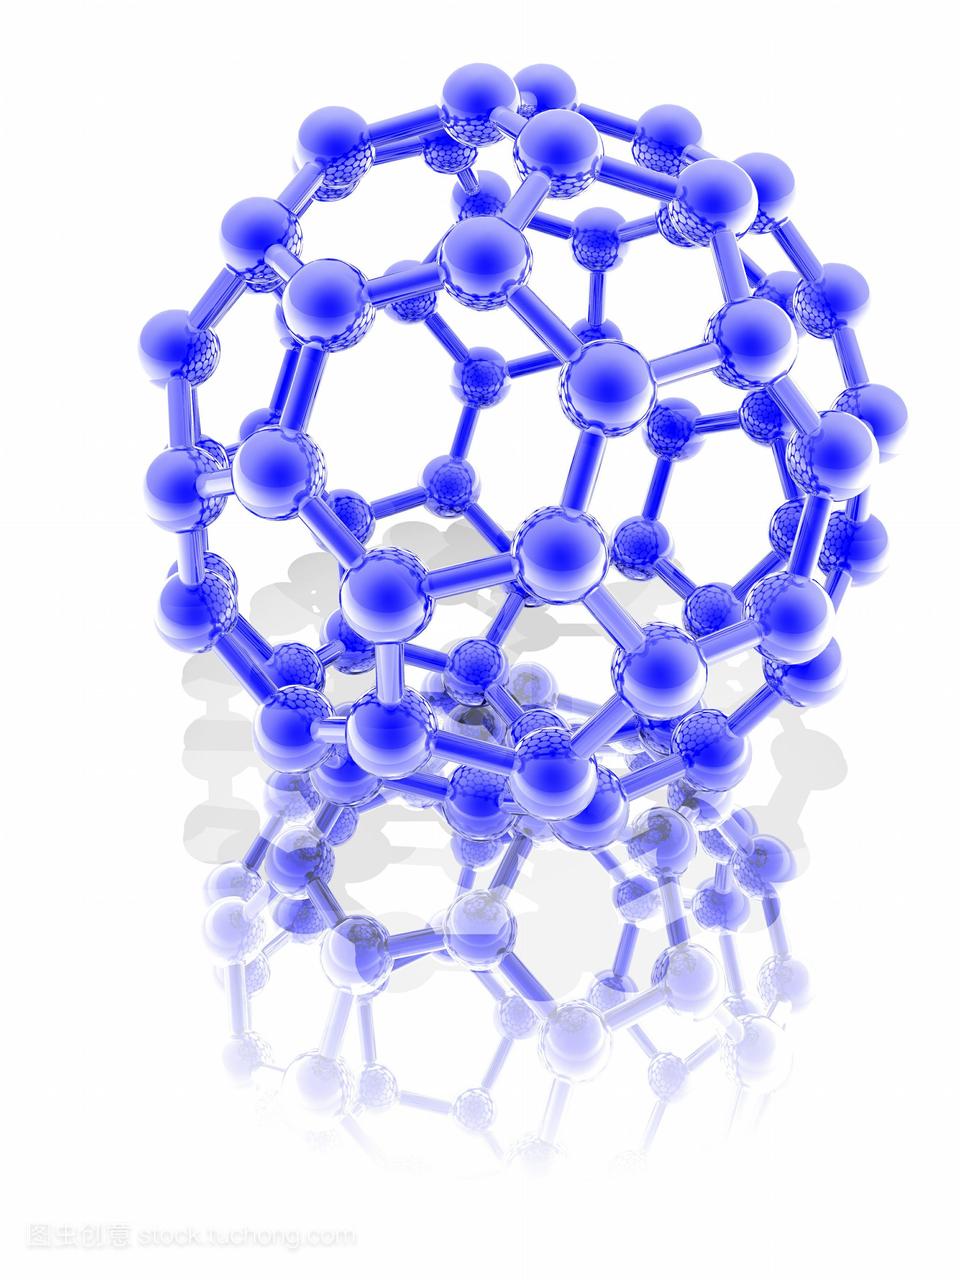 巴基球分子。一种巴克敏斯特富勒烯c60分子的